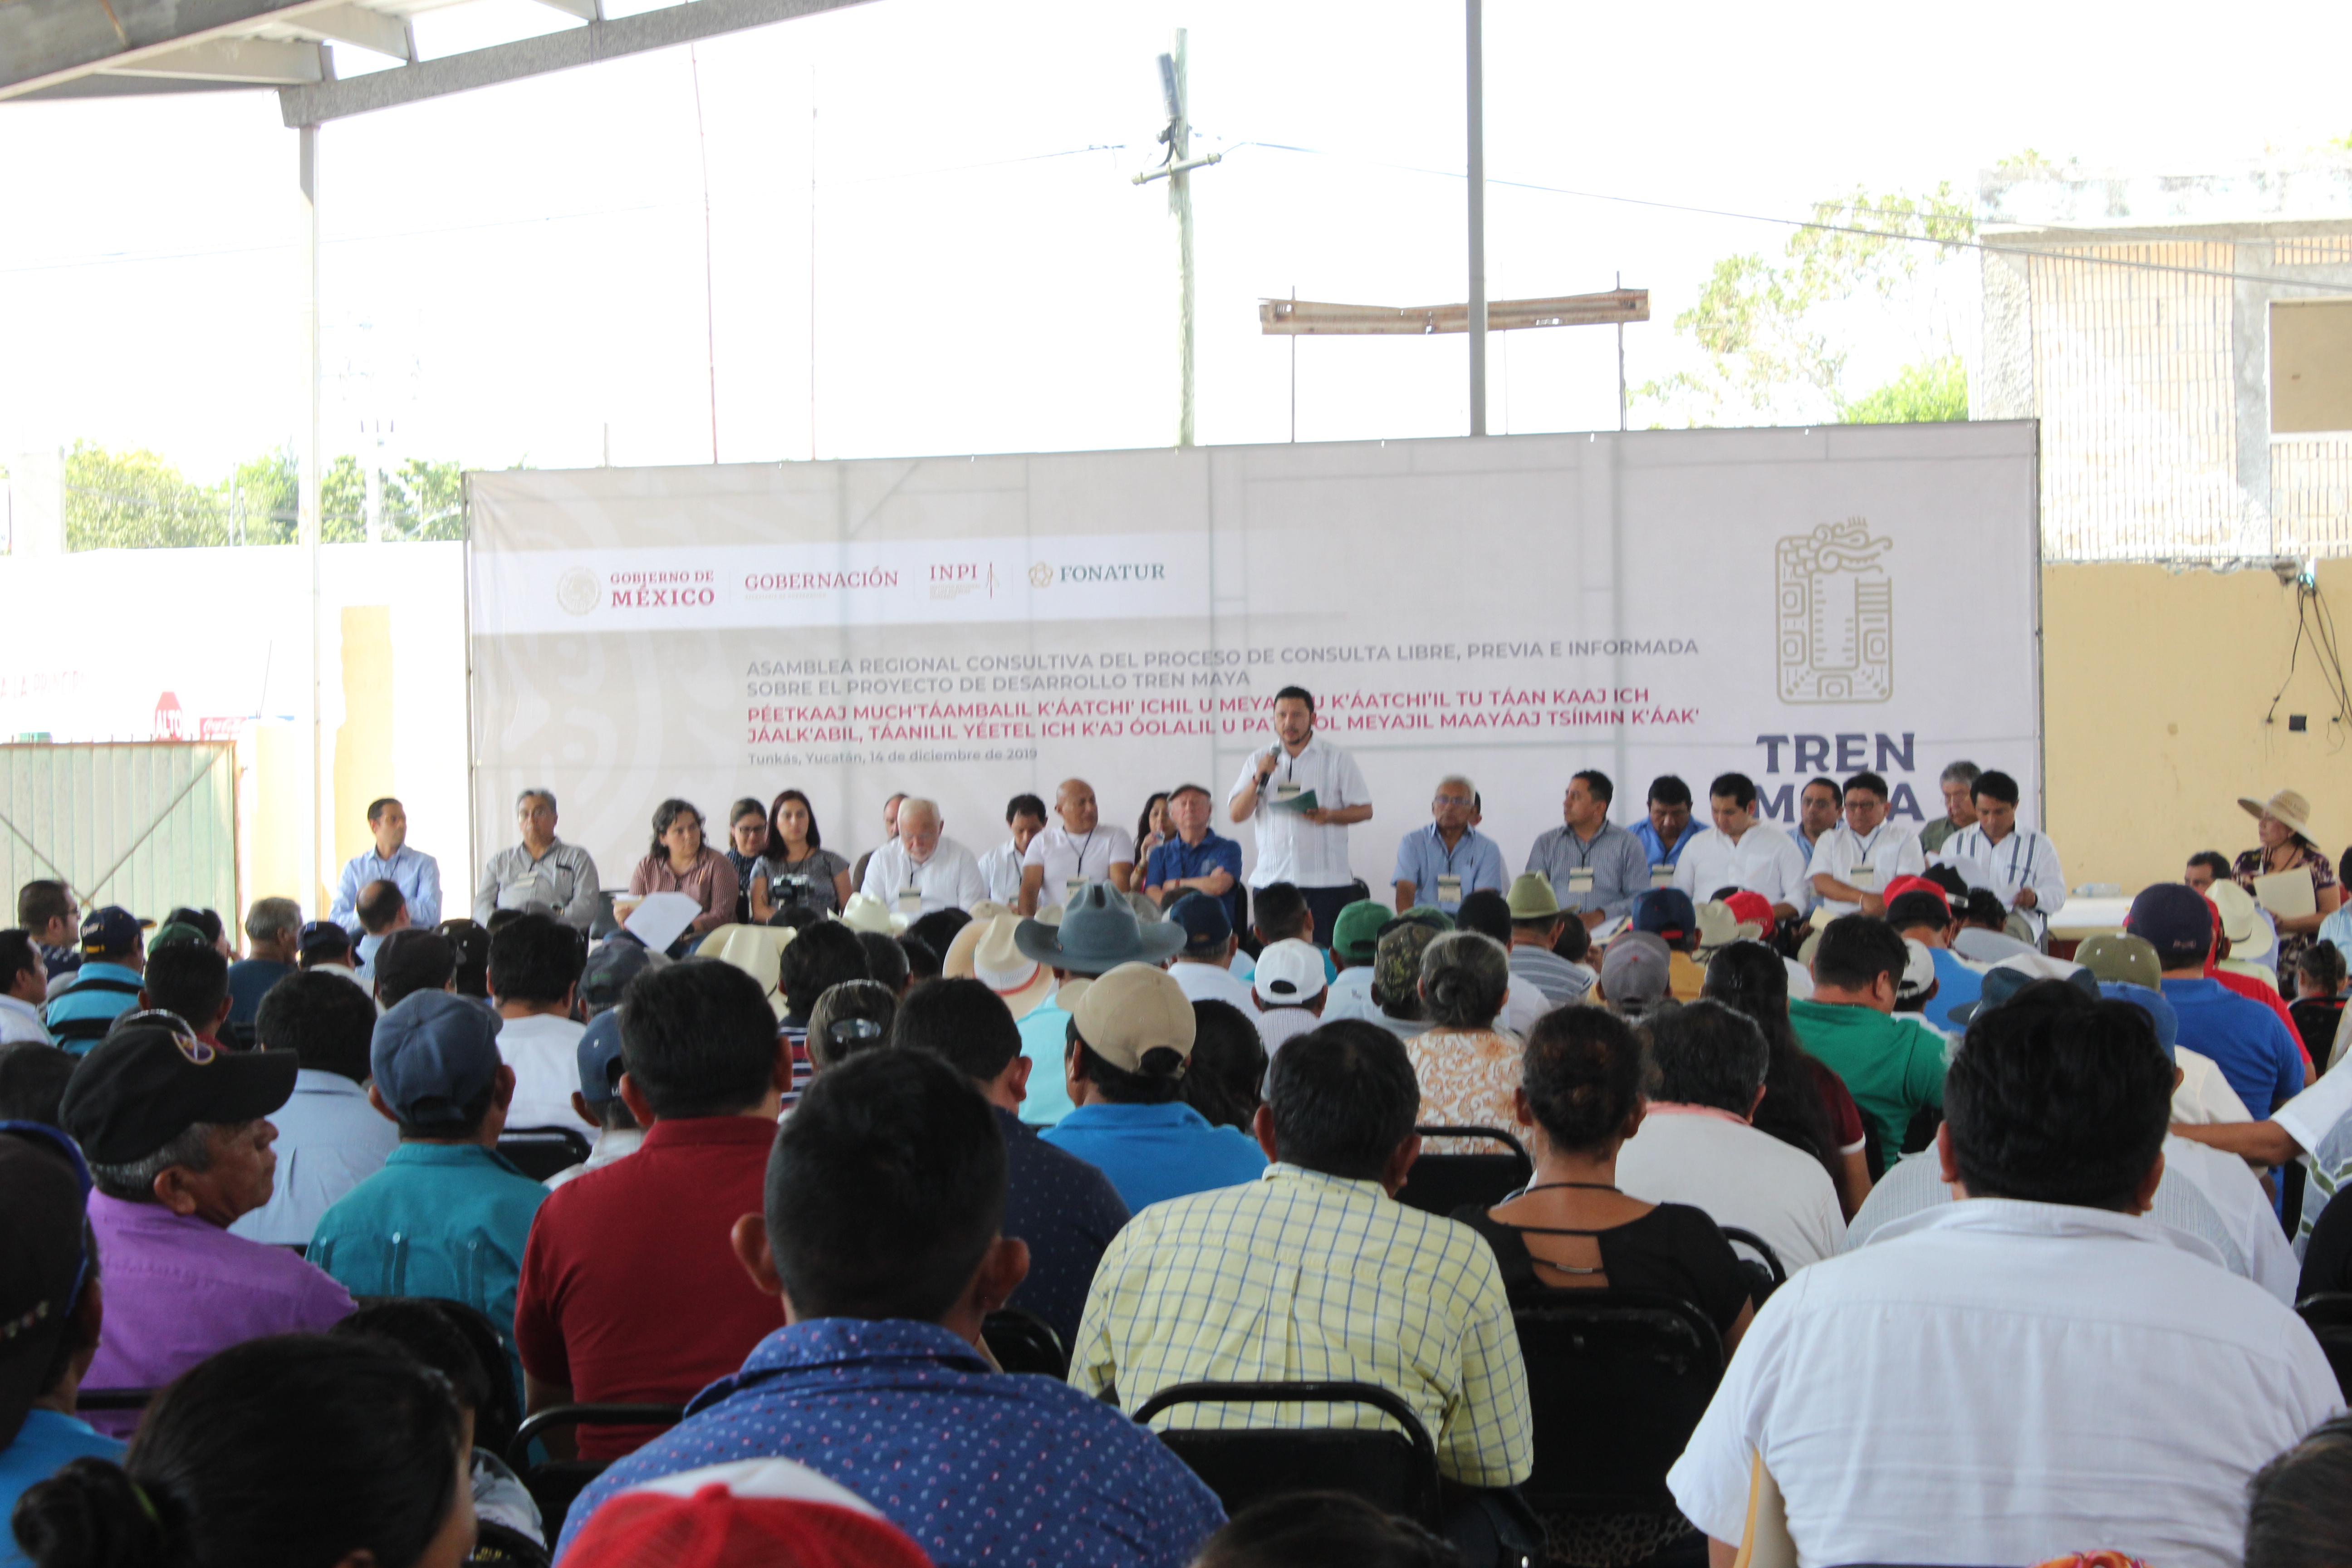 290 organizaciones, colectivos, comunidades y personas exigen el cese de las actividades del proyecto  del tren maya por riesgo sanitario. Solicitan garantías de participación equitativas para las comunidades afectadas